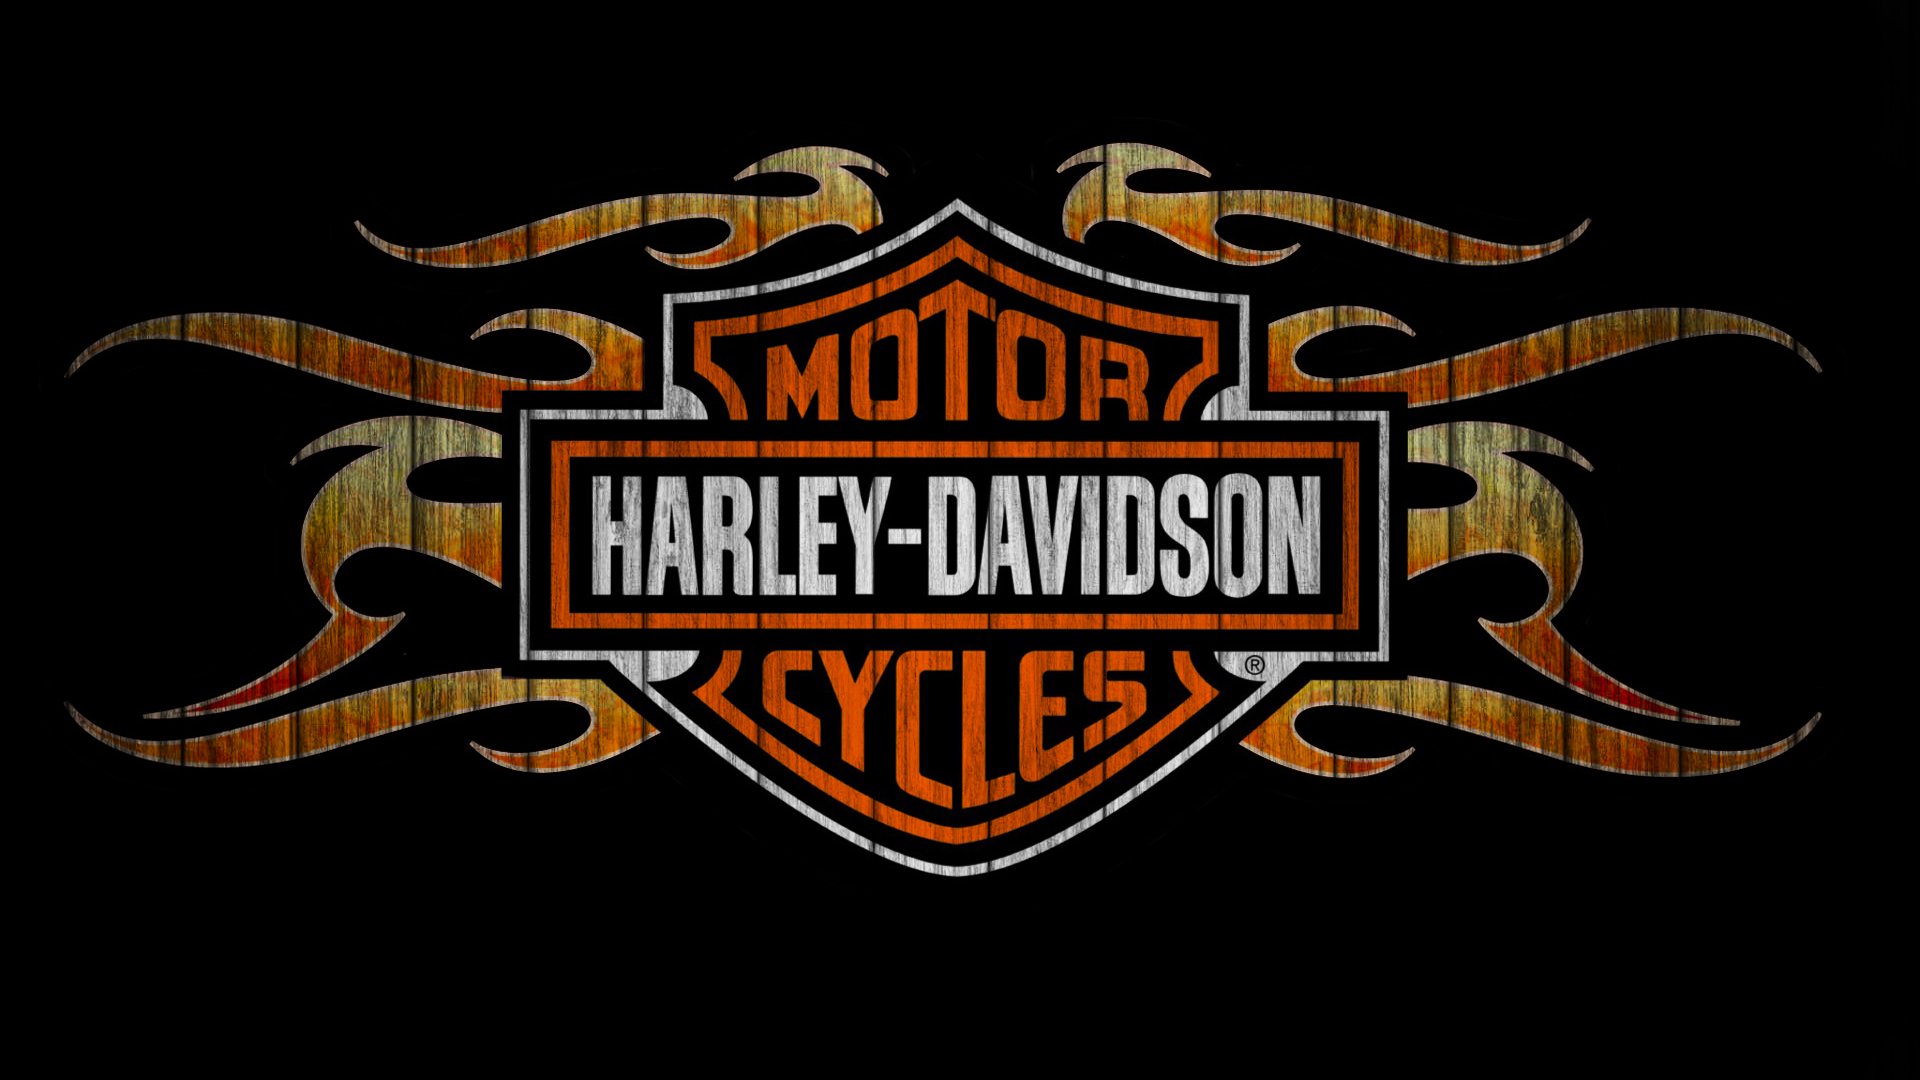 Harley Davidson Motorbike Bike Motorcycle F Wallpaper